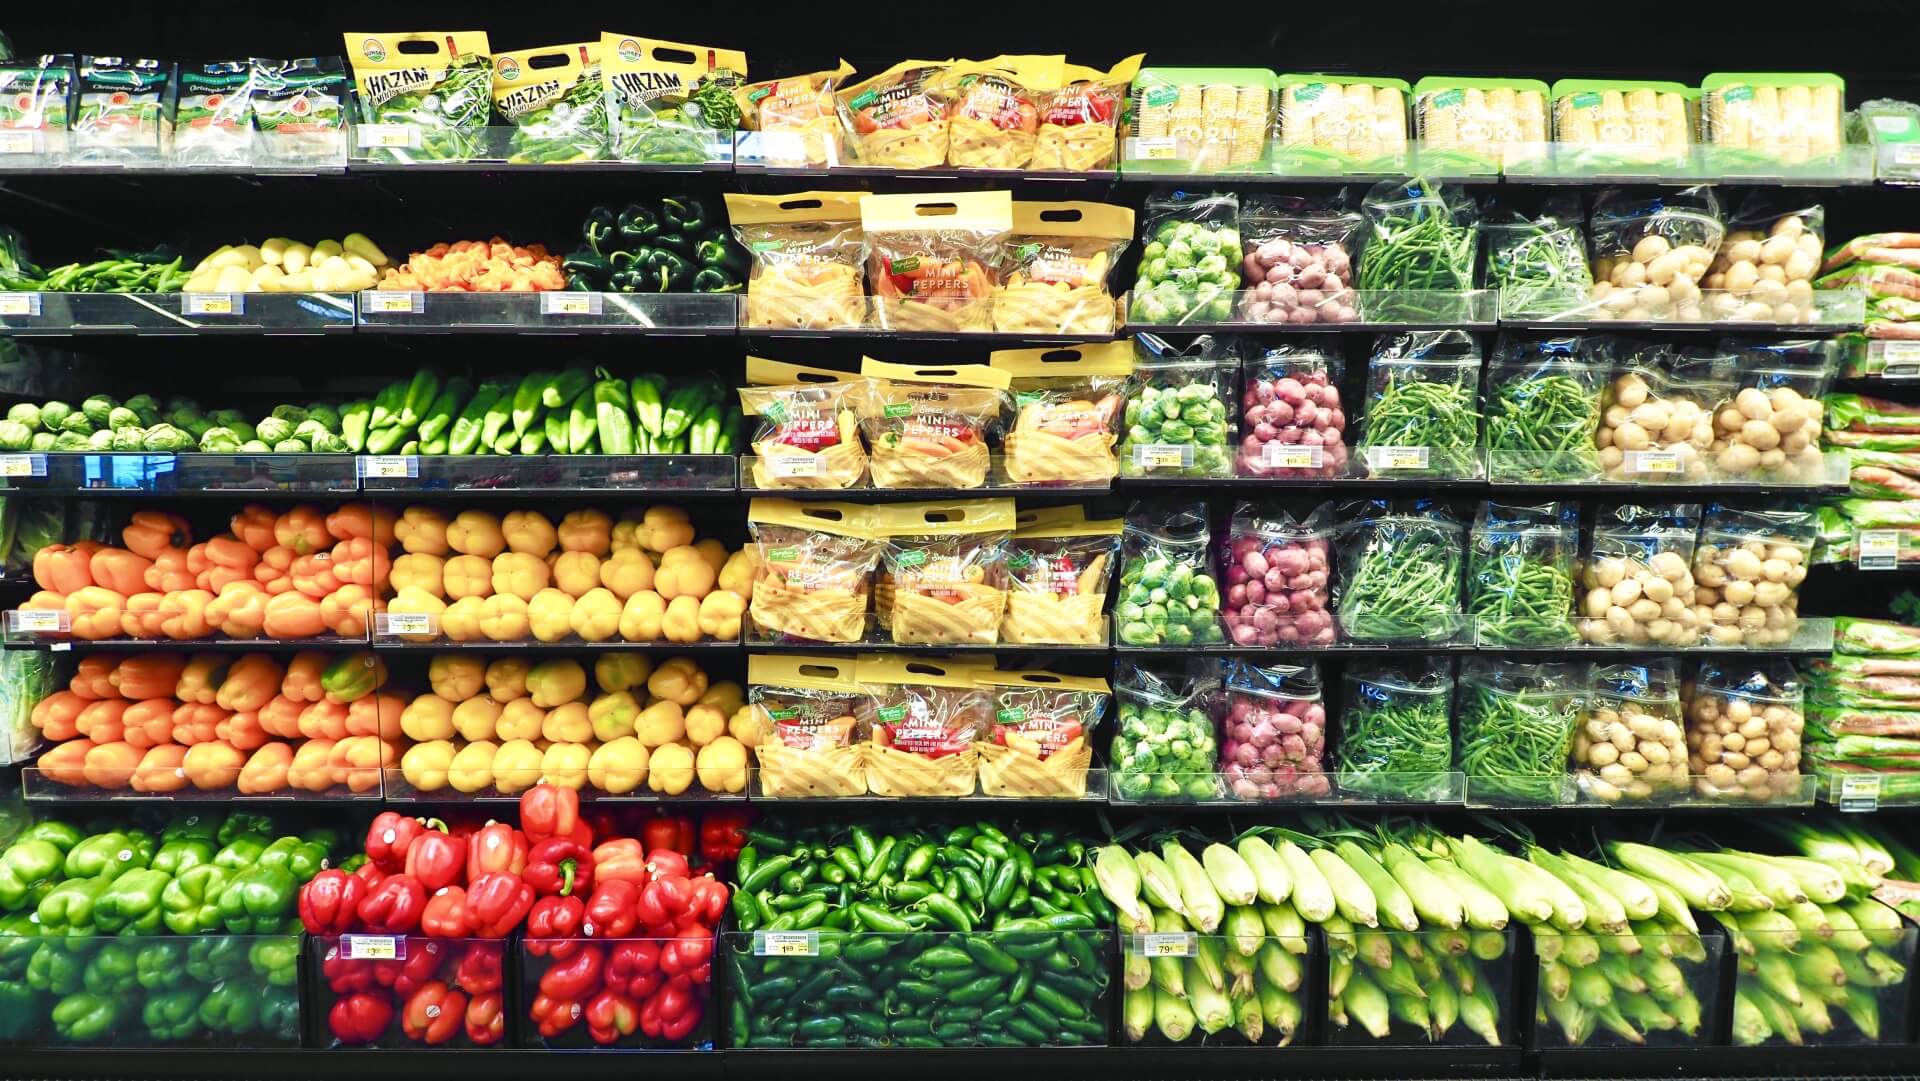 スーパーマーケットでたくさんの野菜や果物が陳列されている写真